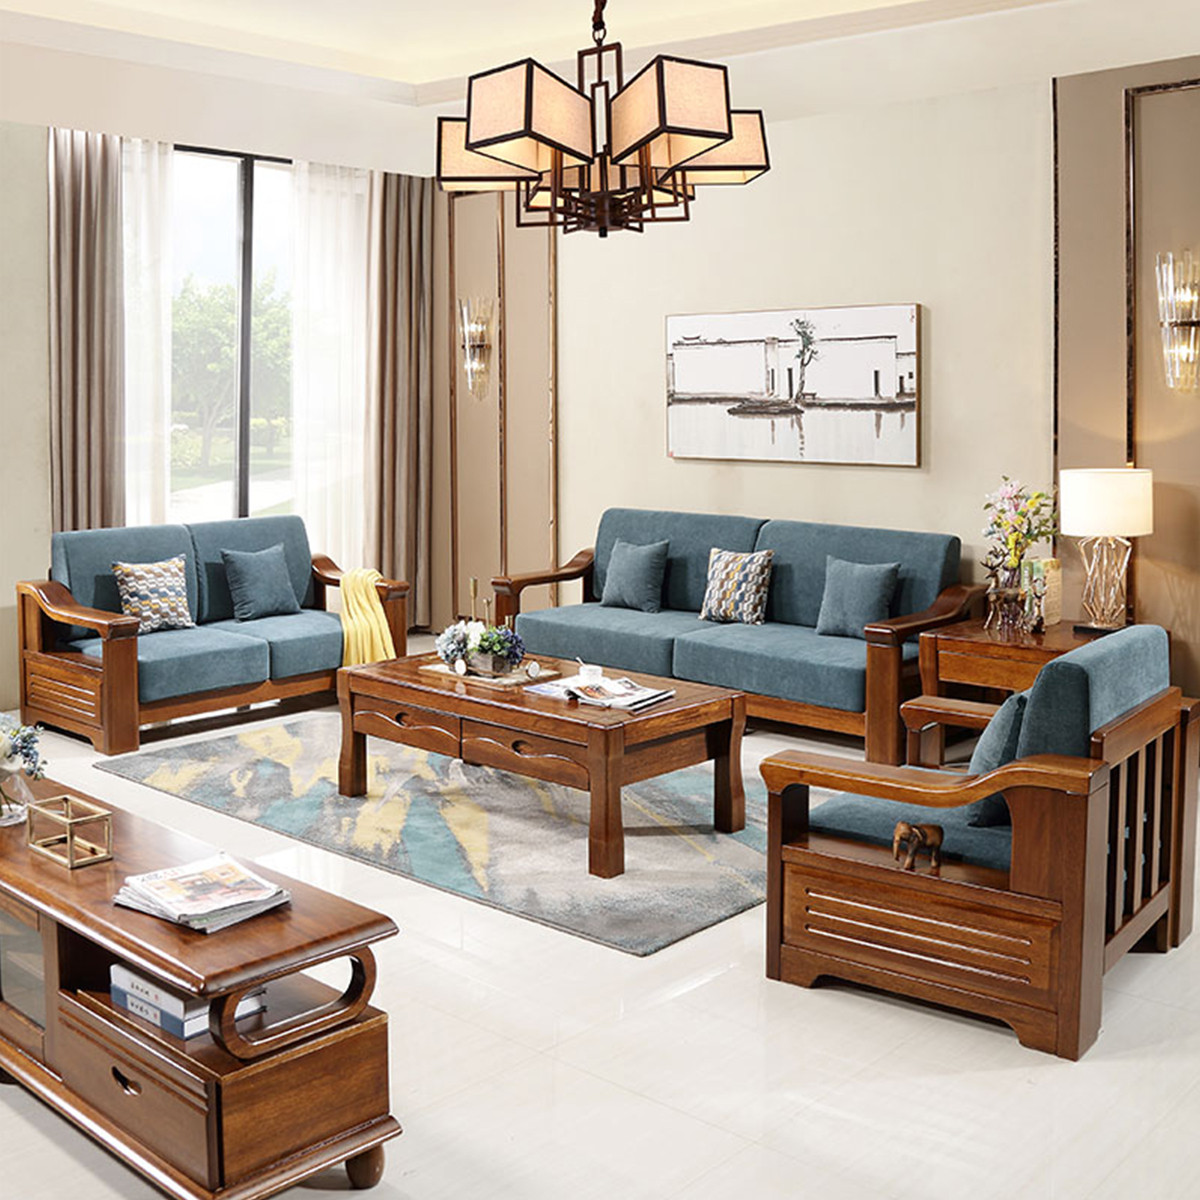 金丝胡桃木沙发新现代中式全实木沙发经济型木质组合客厅家具